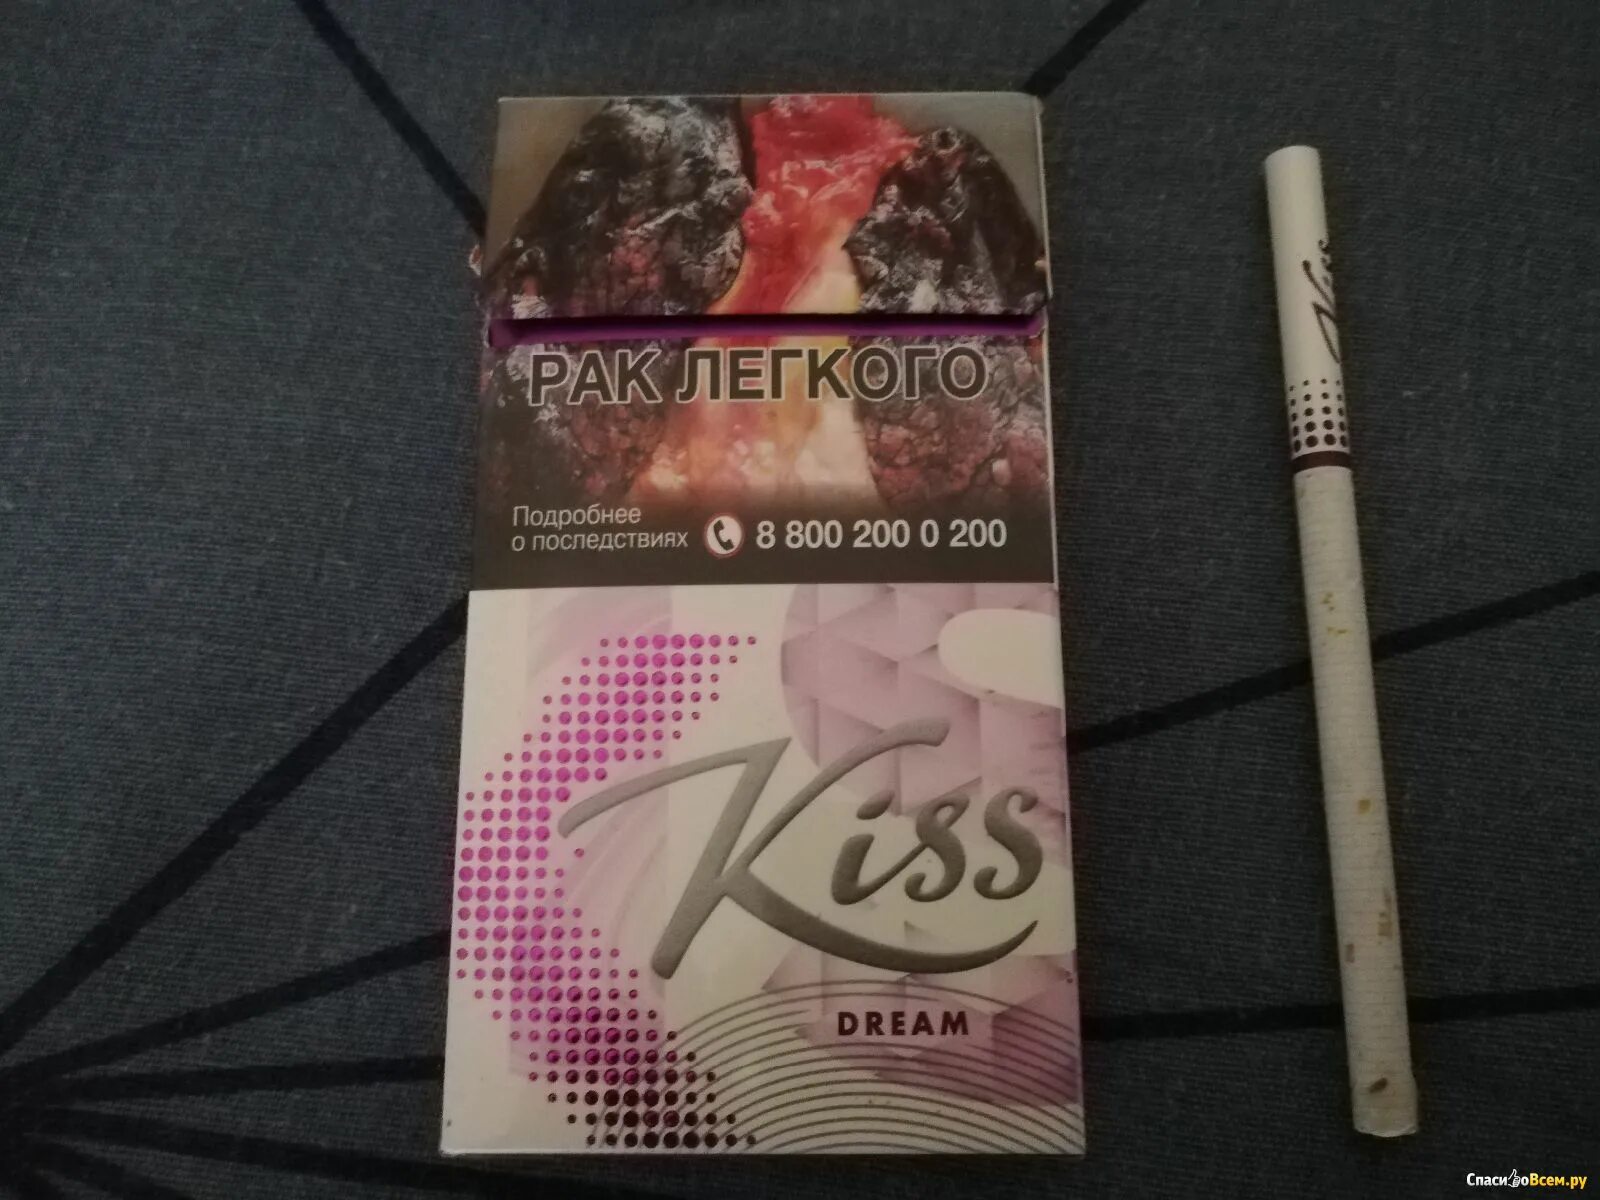 Сигареты Kiss Dream super Slims. Кисс фиолетовый сигареты слим. Сигареты Кисс Дрим фиолетовые. Kiss Dream SS сигареты. Кис с какими вкусами